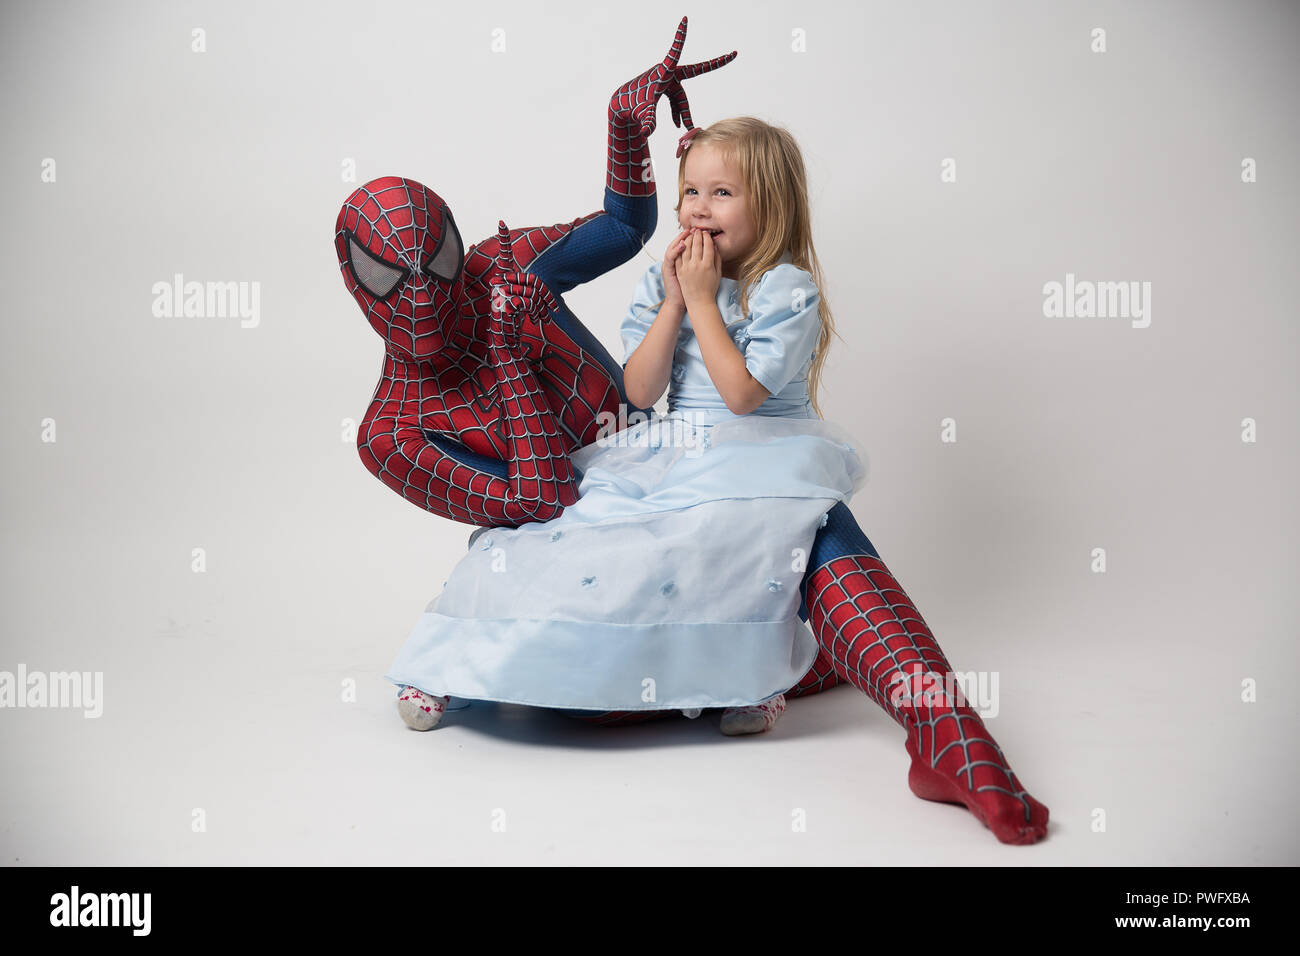 Israel, Tel Aviv 14. Oktober 2018. Die spiderman hält ein kleines Mädchen in seinen Armen. Ein Mann in einem spiderman Anzug kam das Kind auf seinen Geburtstag zu gratulieren. Spiderman Kostüm Verleih. Stockfoto